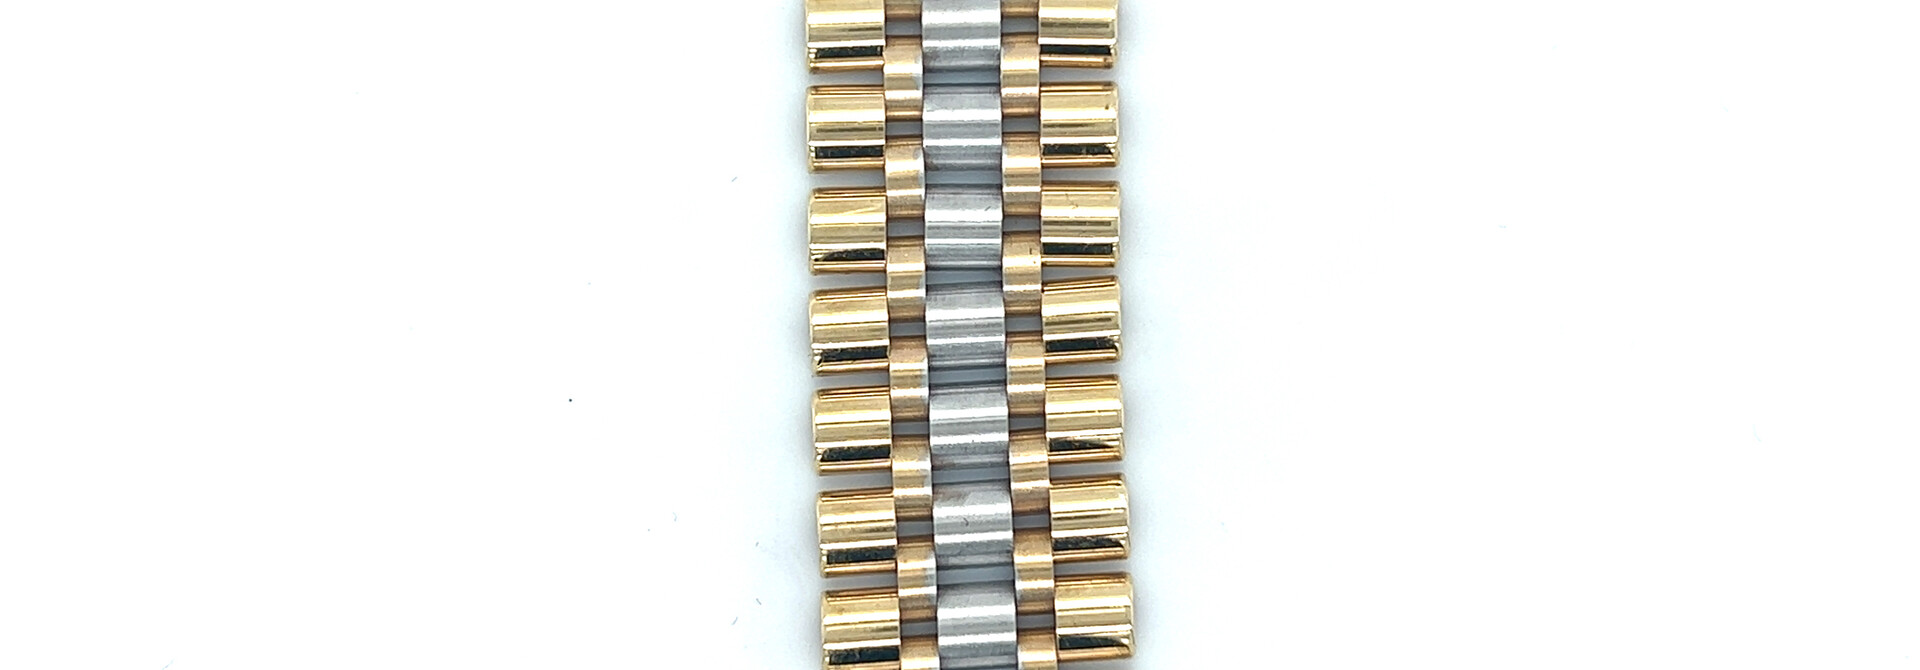 Armband roleksschakel bicolor